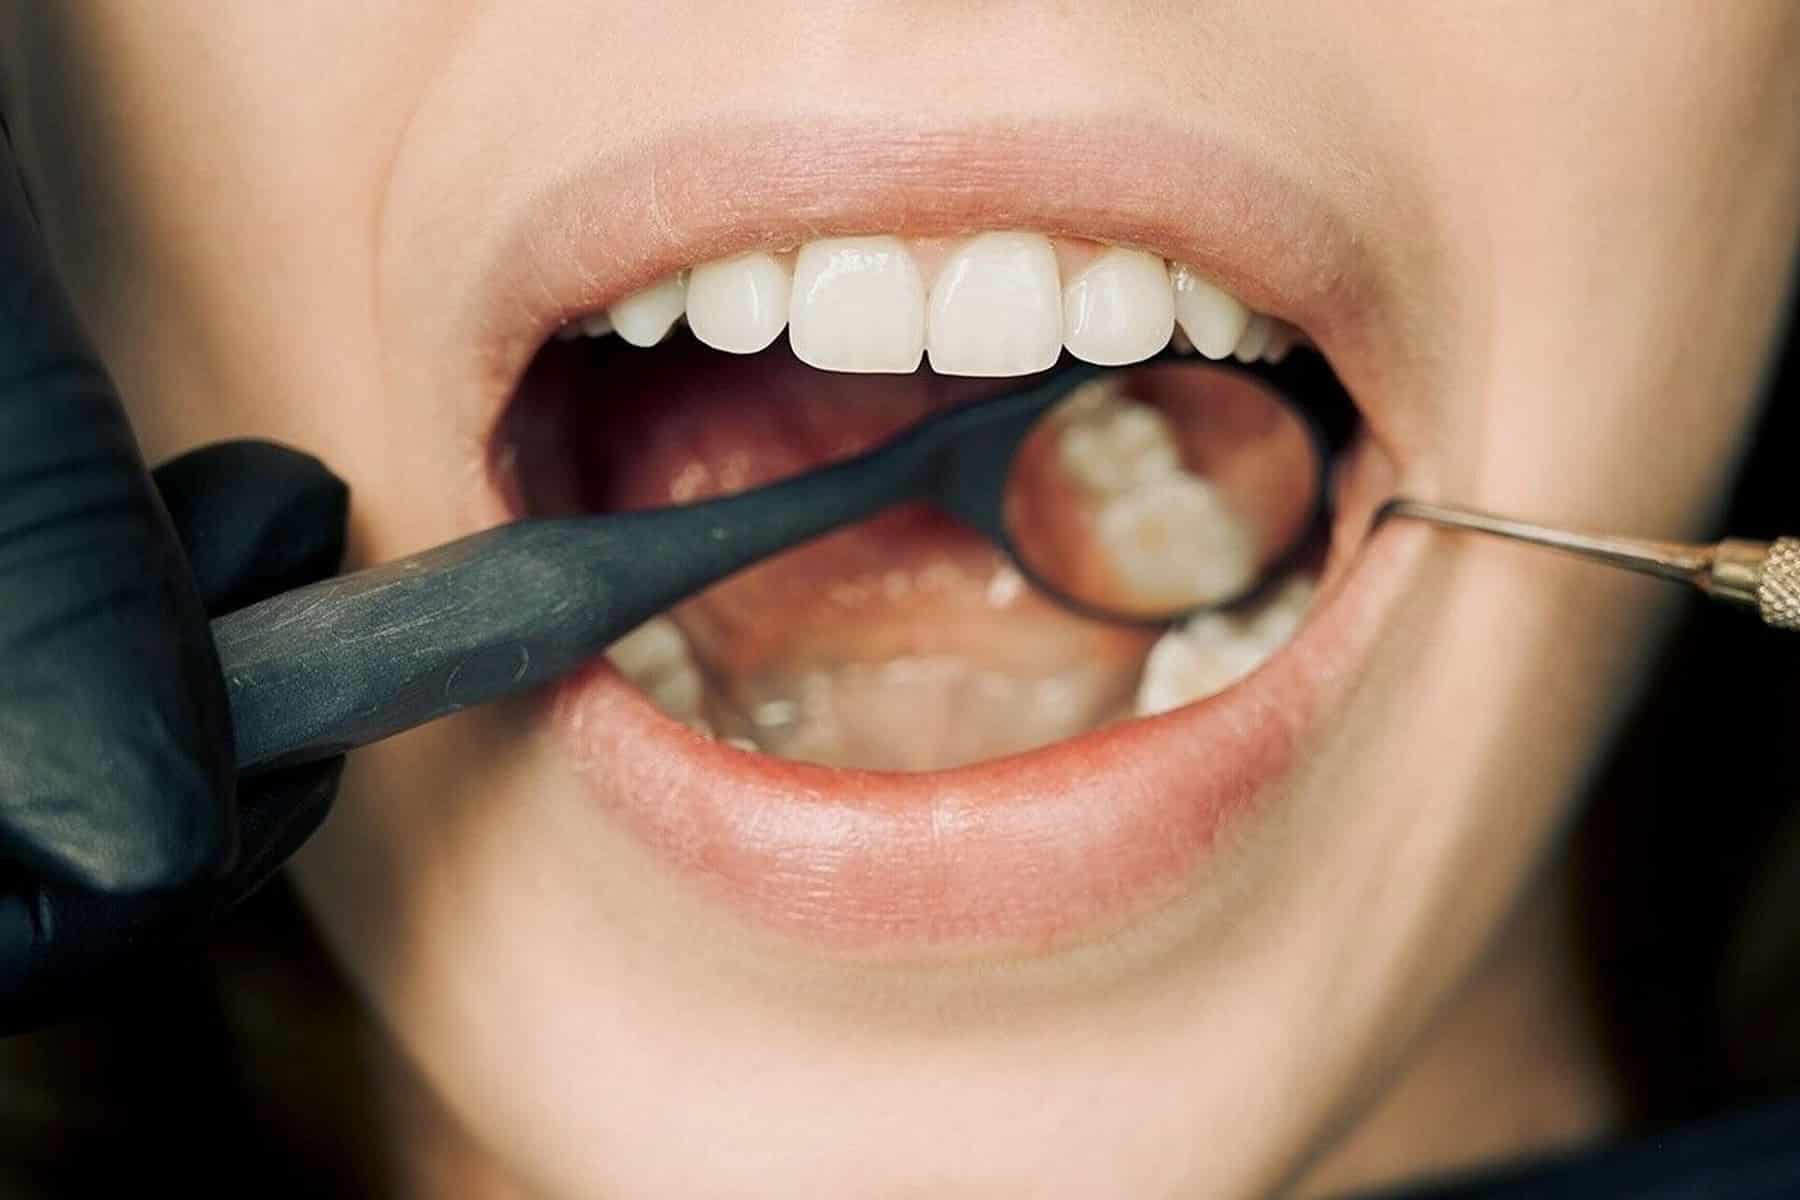 Macchiette bianche sui denti: cause e rimedi